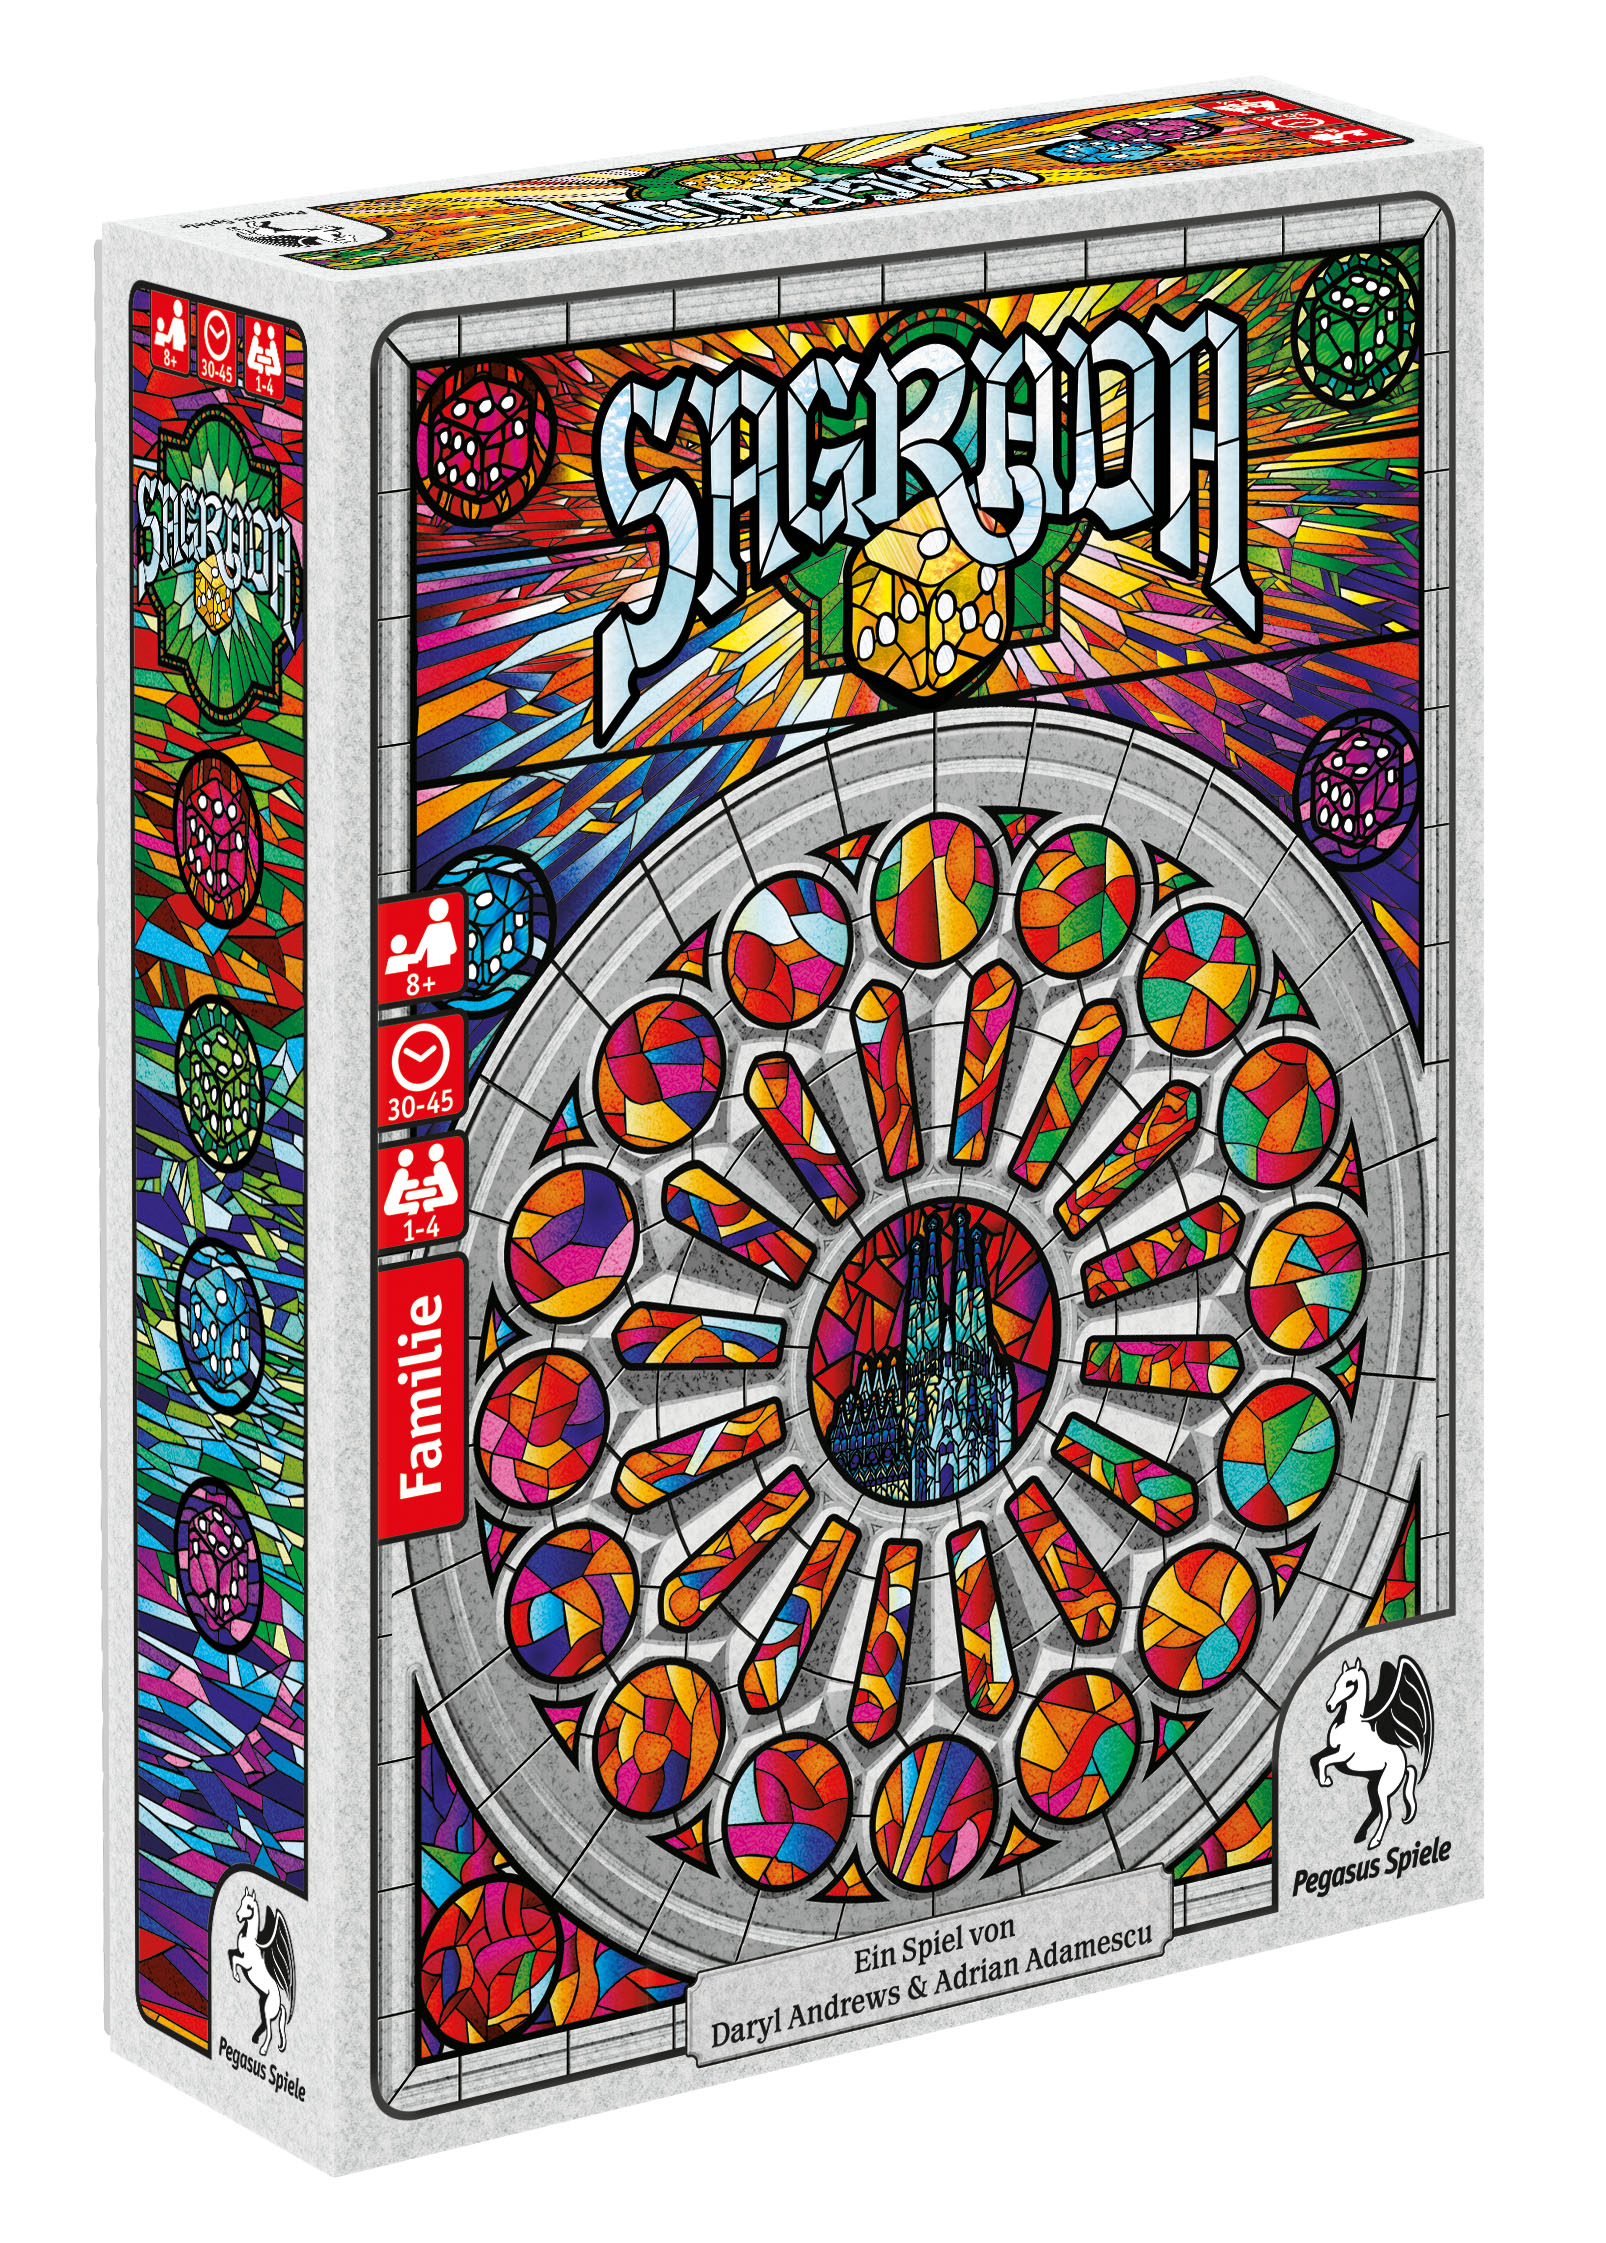 Sagrada - weitere Informationen vom Verlag